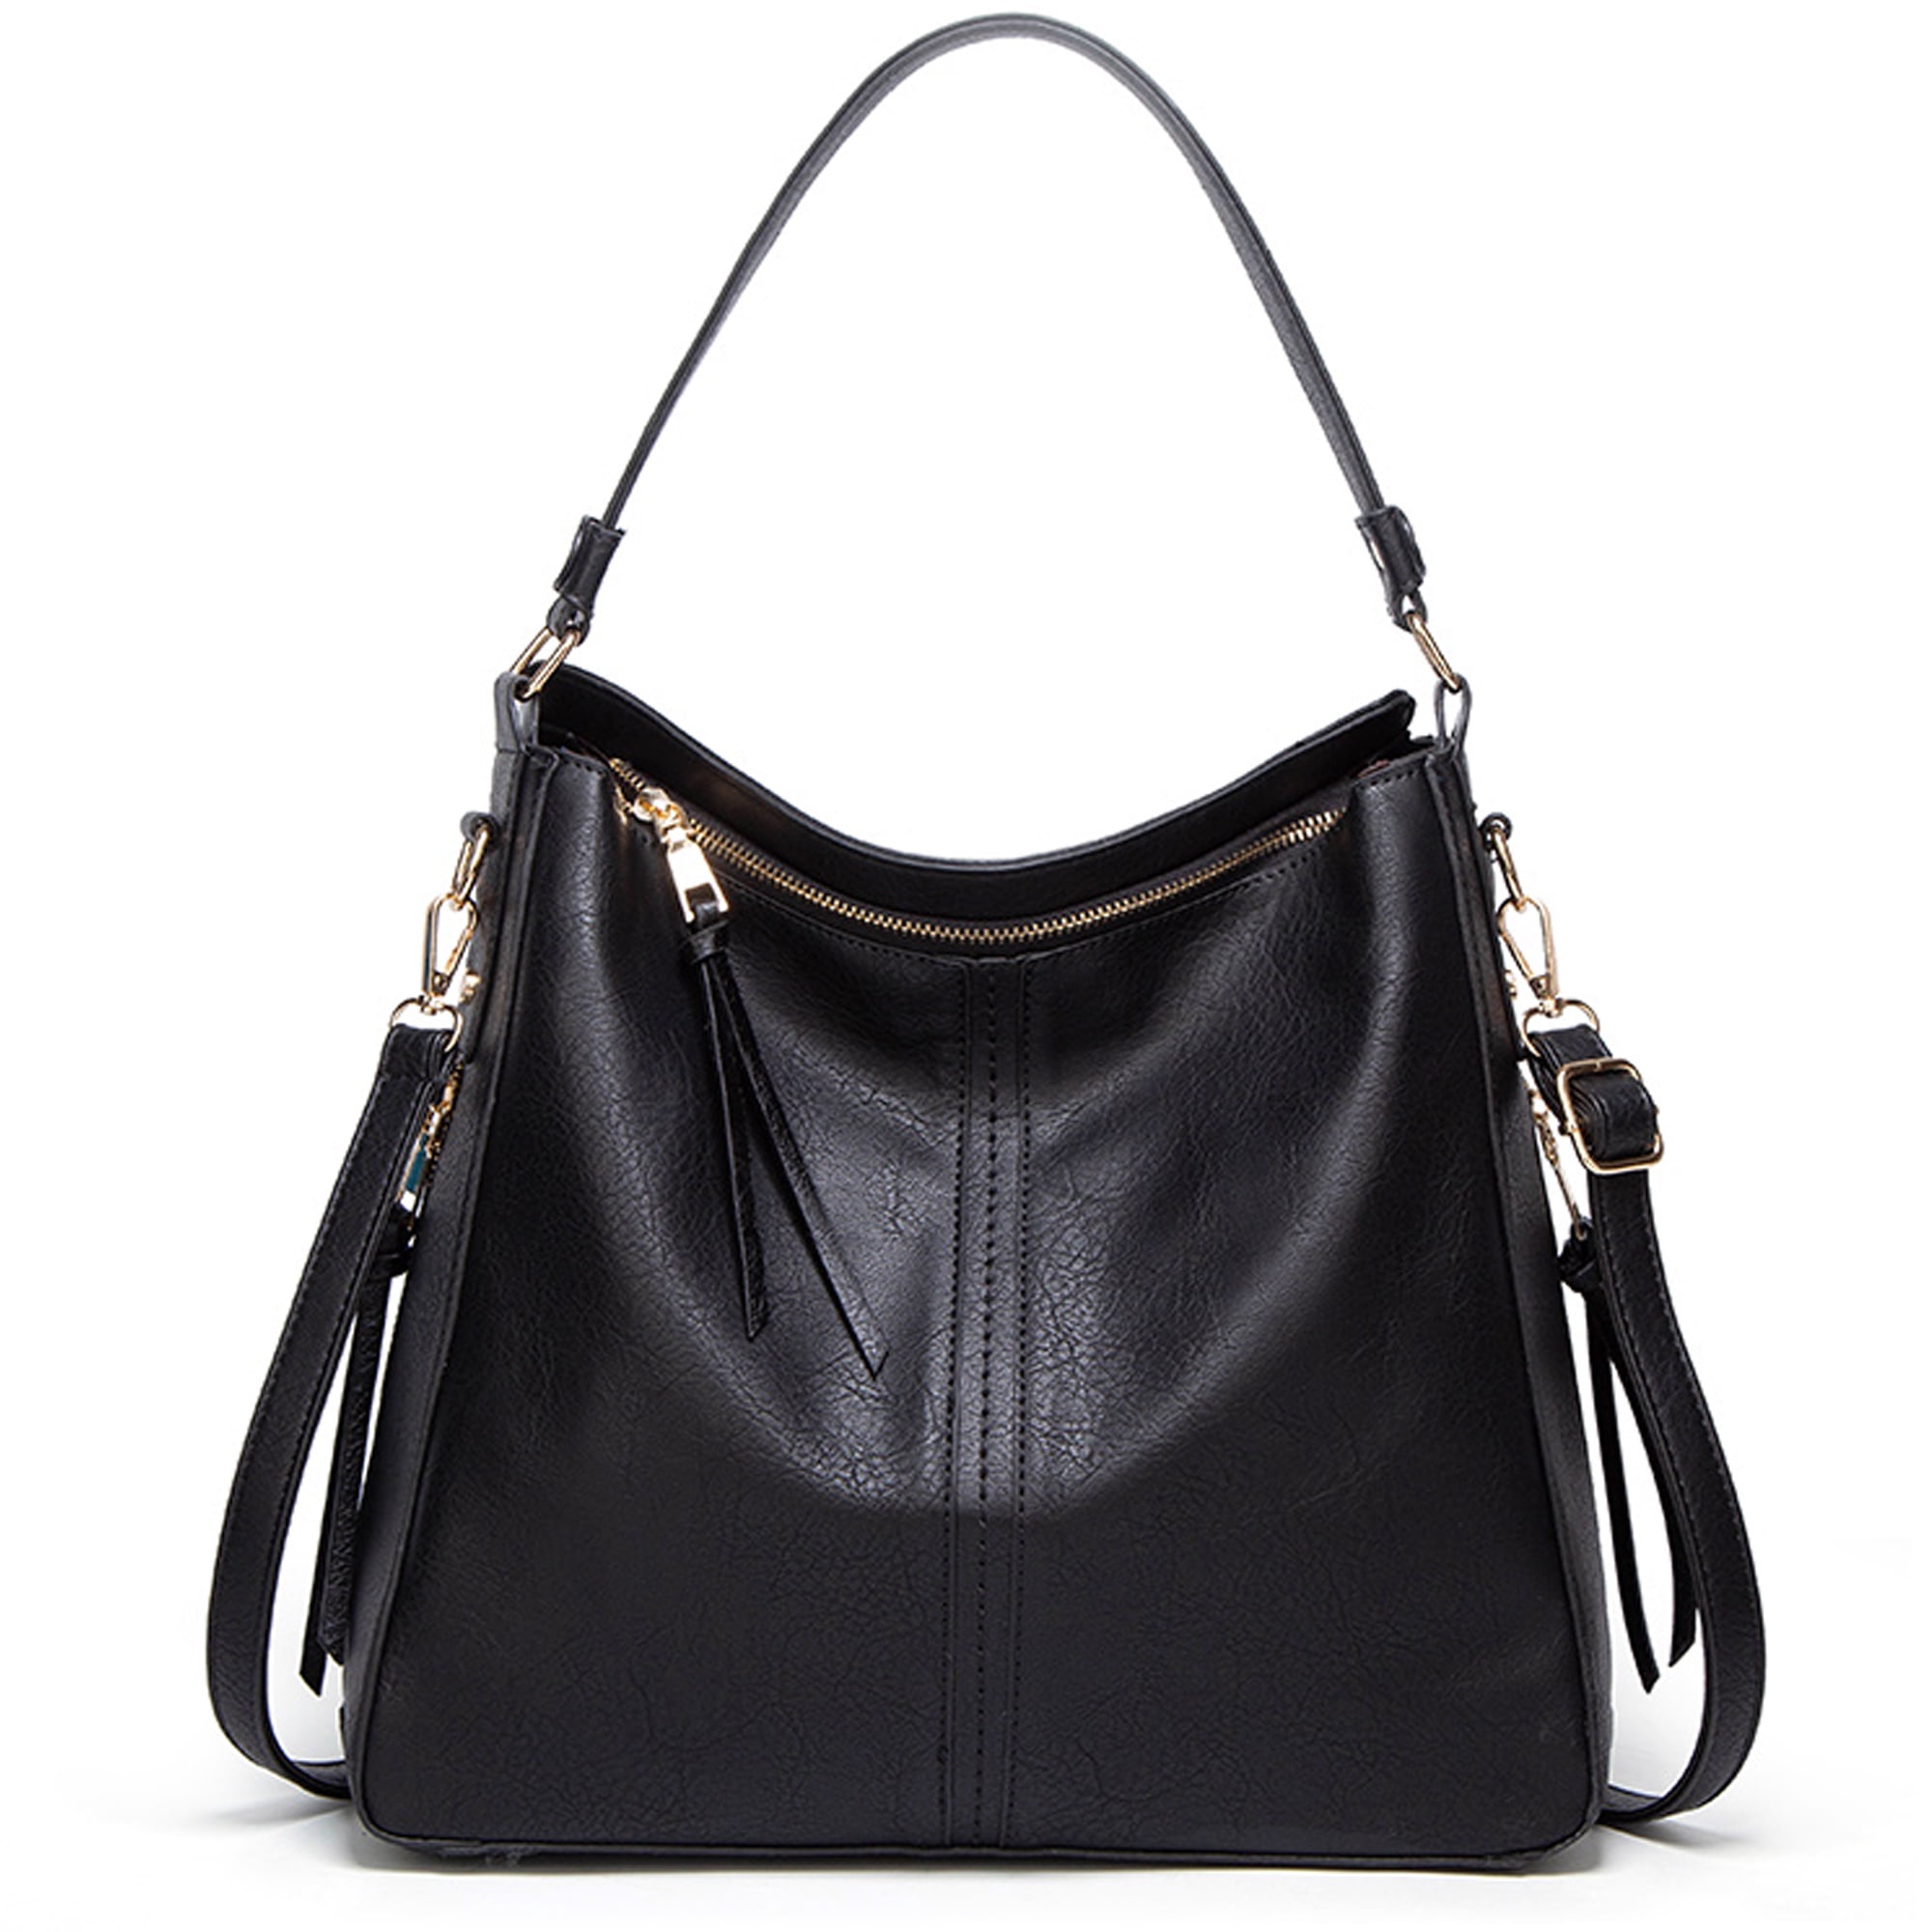 Mifater Handbags for Women Ladies Hobo Bag Tote Shoulder Bag Crossbody ...